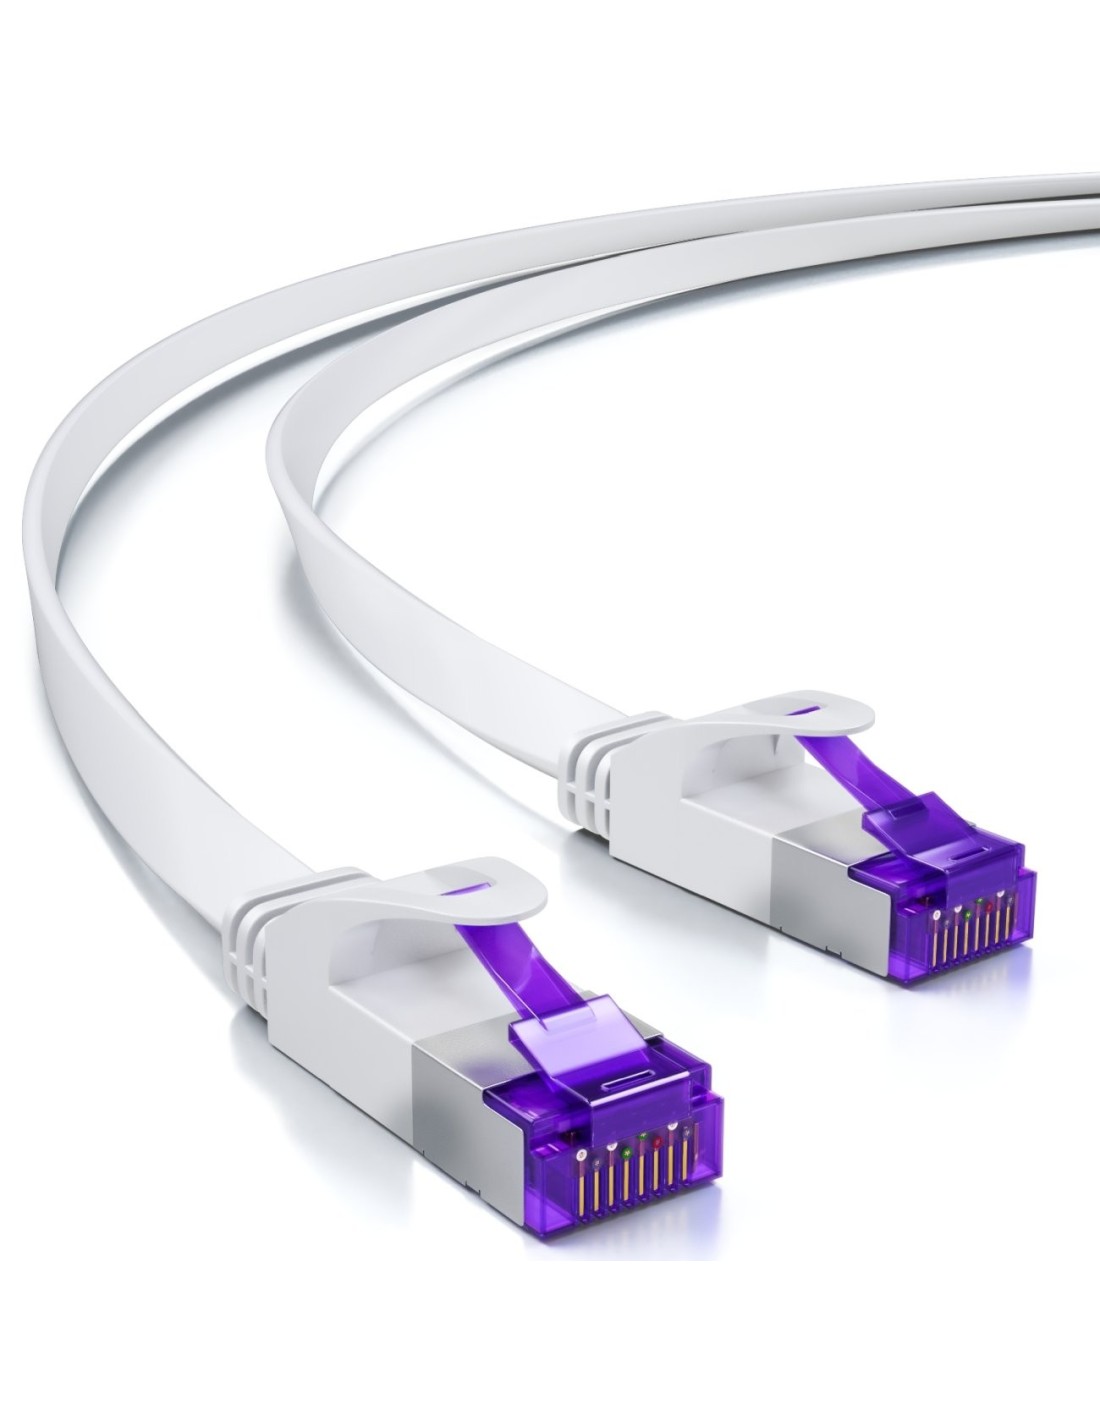 Les prises Ethernet RJ45 ne seront plus obligatoires dans les